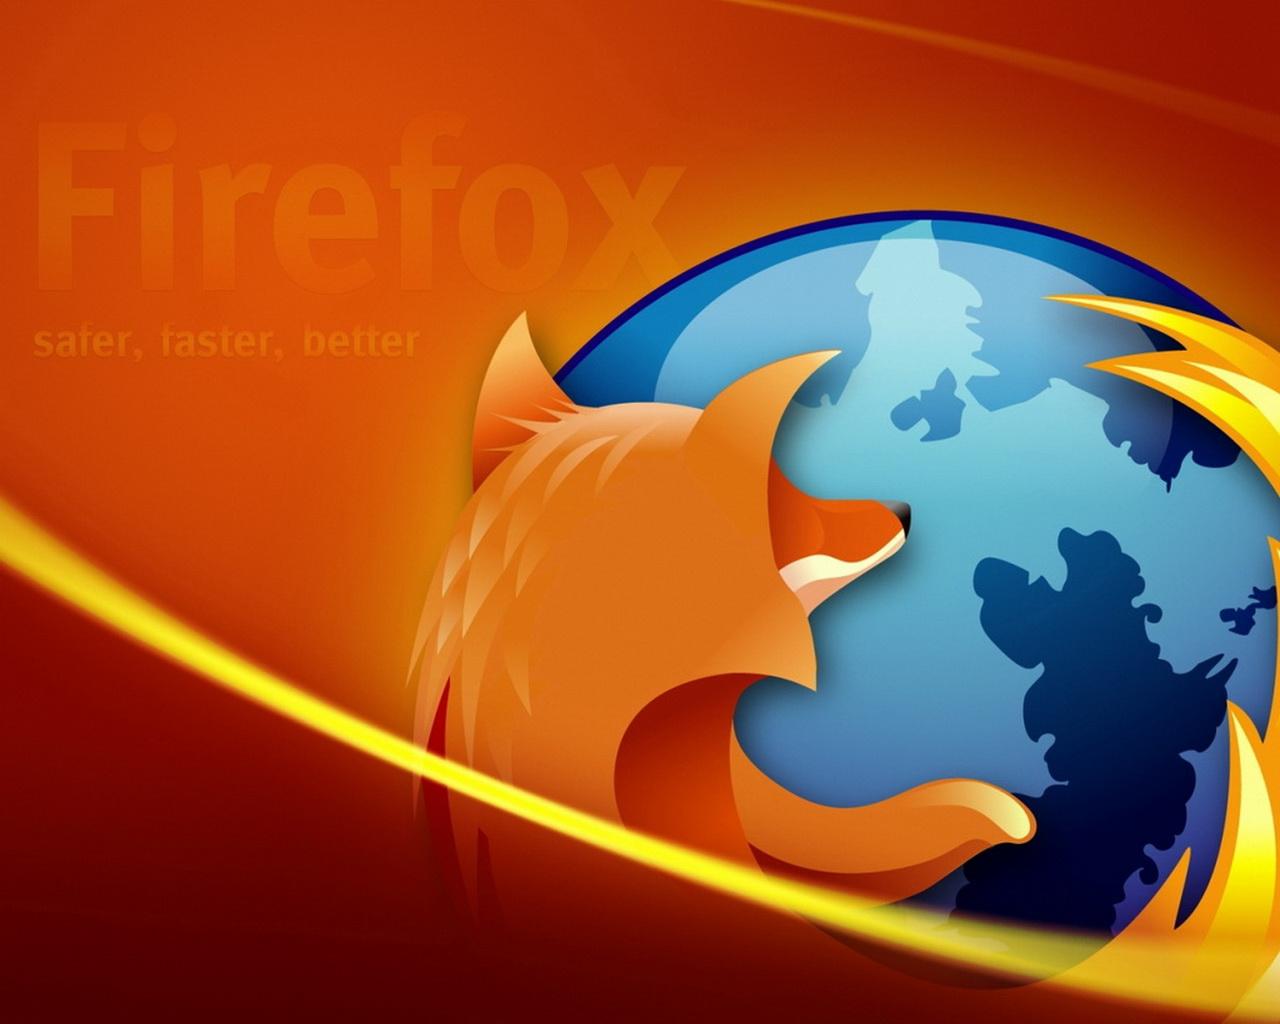 Обои на рабочий стол - Firefox (20-05-2009)